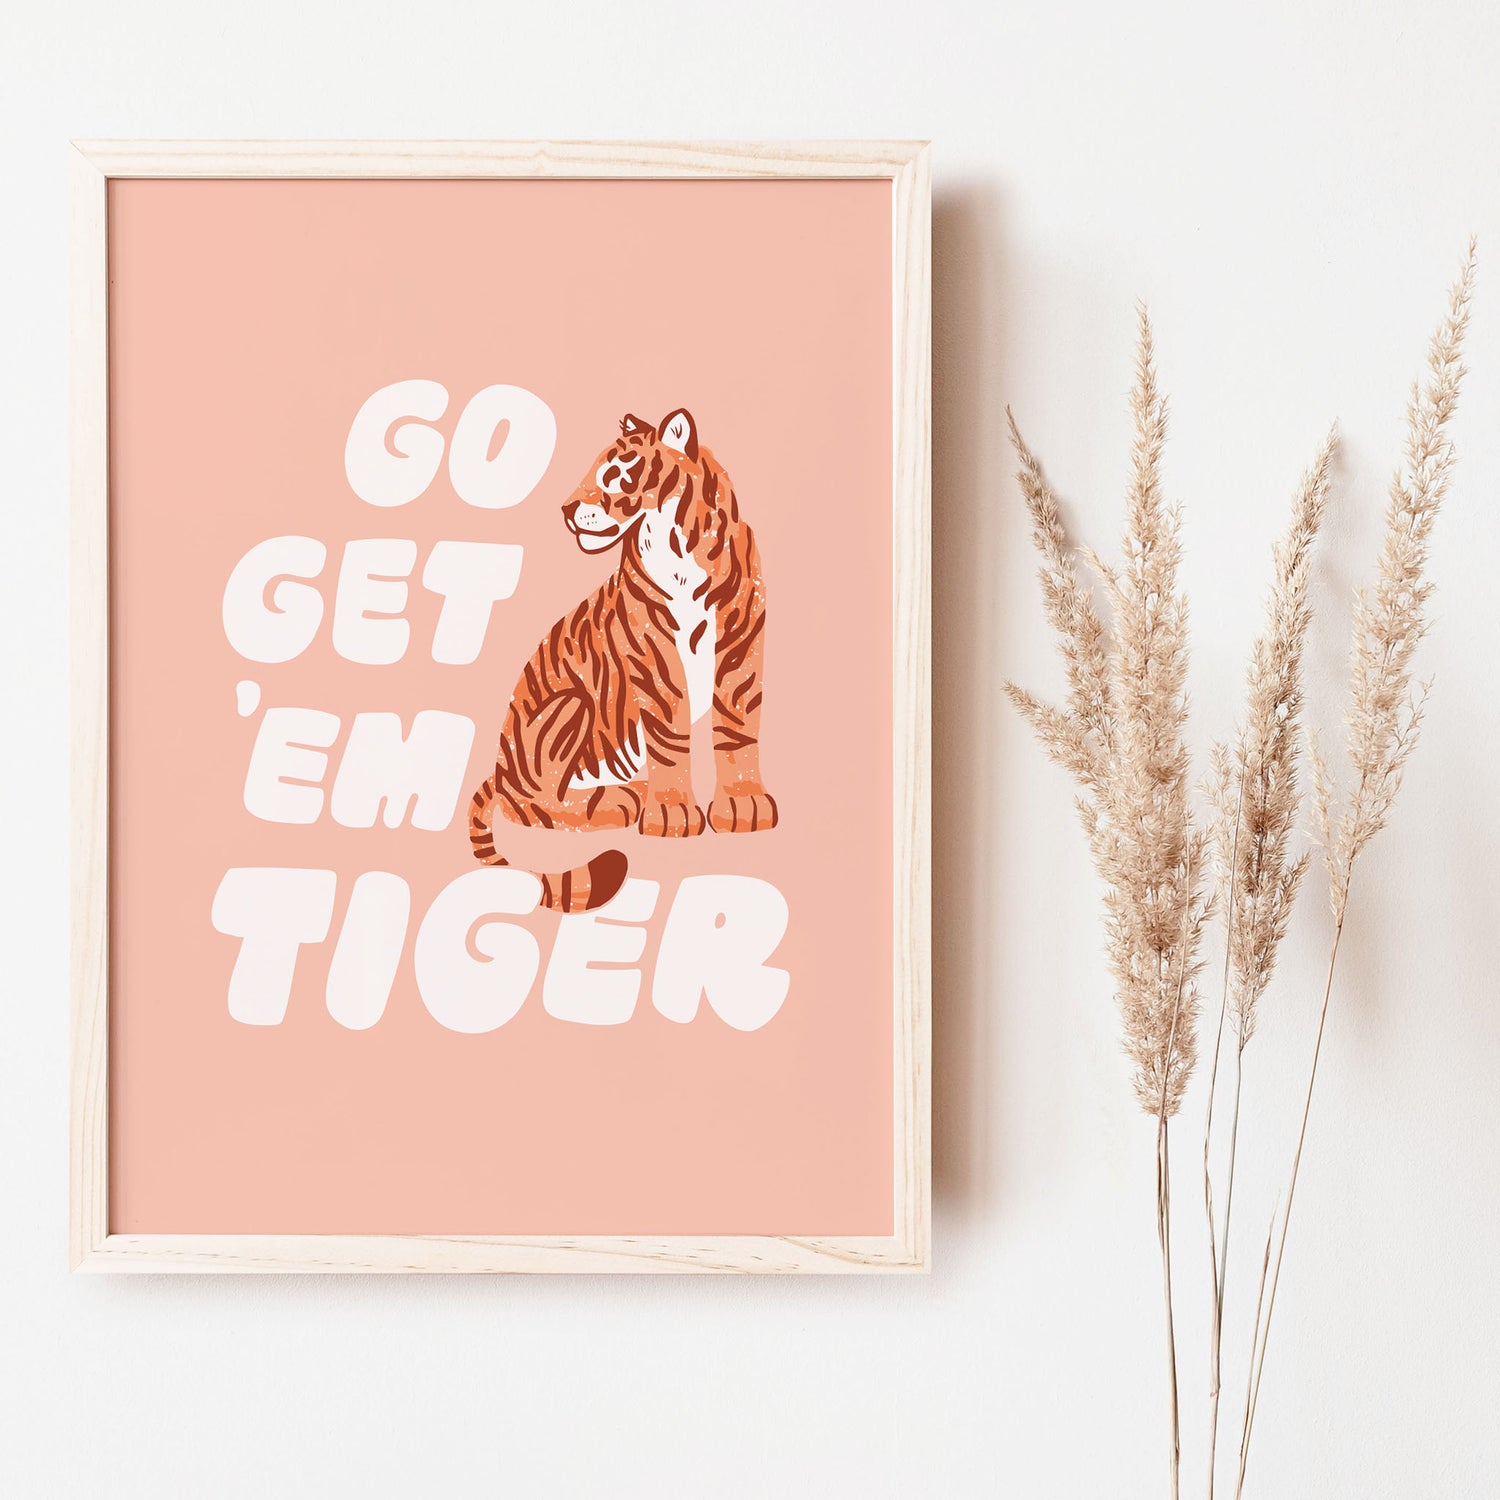 Go Get 'Em Tiger pink art print great for kids spaces